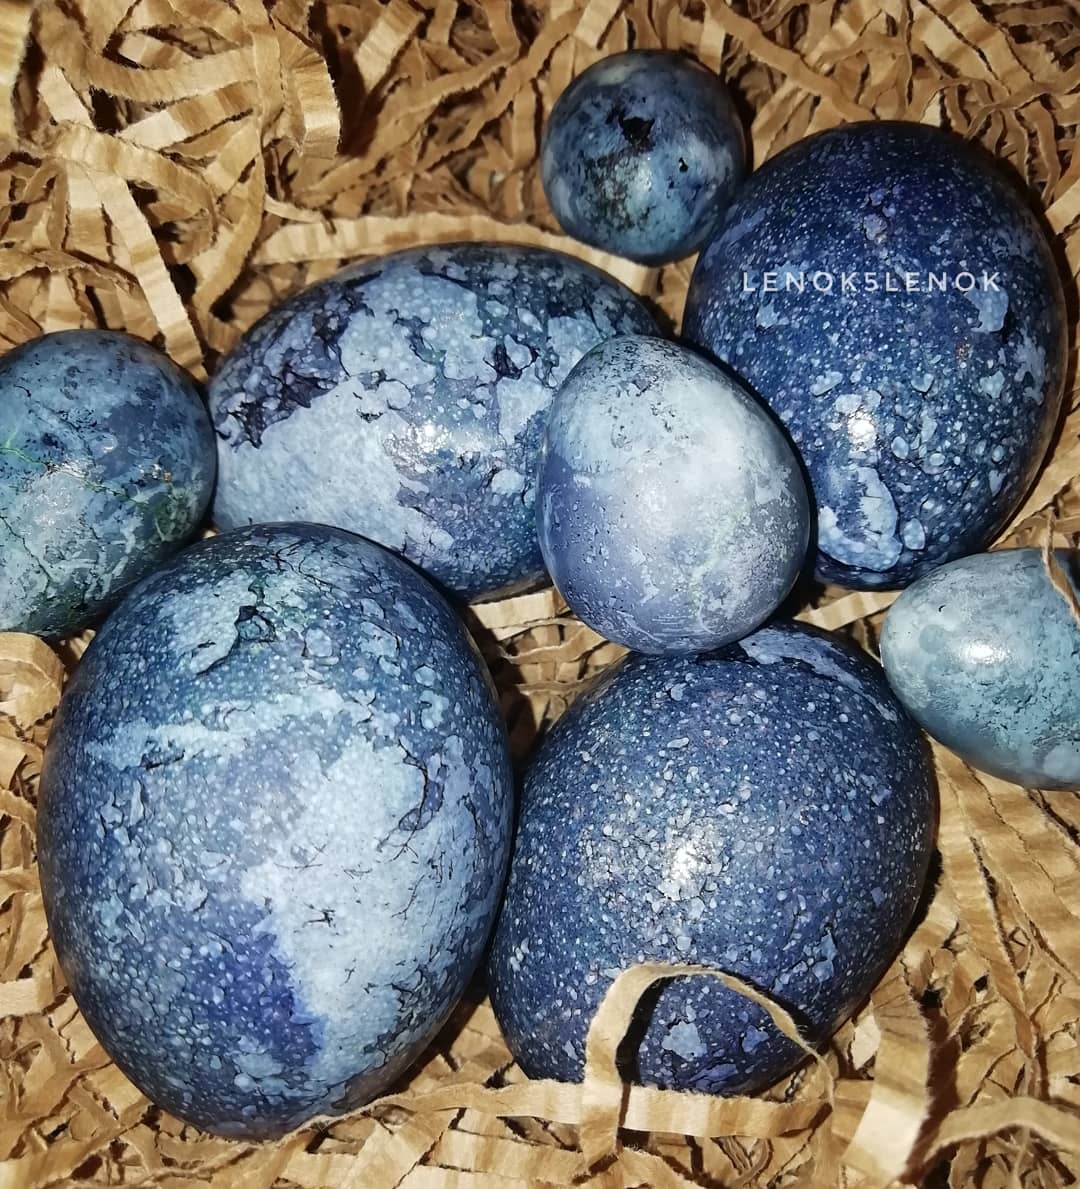 Космические пасхальные яйца